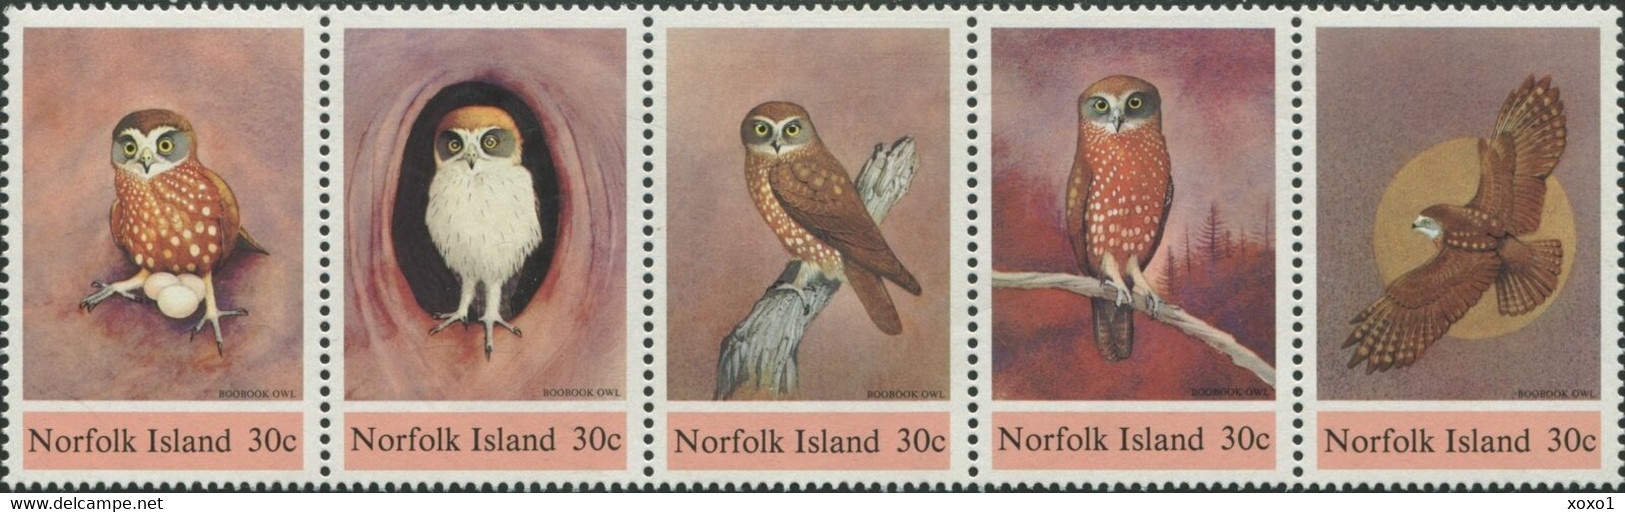 Norfolk 1984 MiNr. 339 - 343  Norfolk-Insel Birds Owls 5v MNH** 9,50 € - Eulenvögel